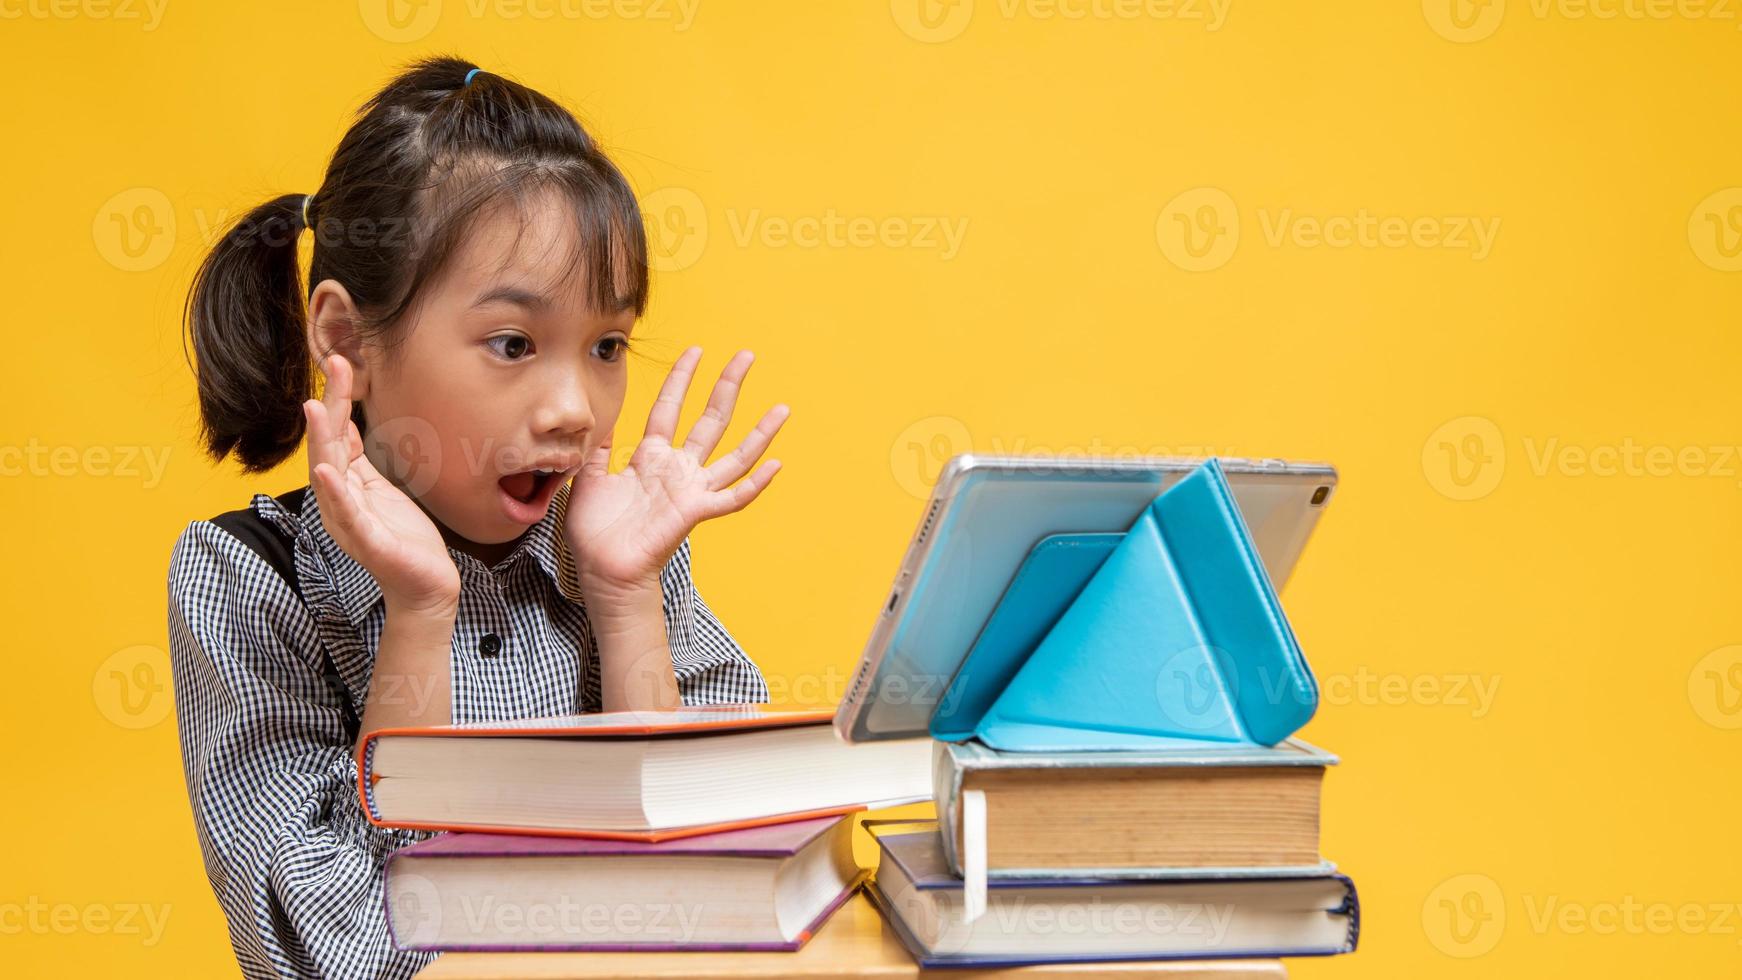 thailändisches Mädchen sieht überrascht aus, wenn es Tablette auf Stapel von Büchern mit gelbem Hintergrund betrachtet foto